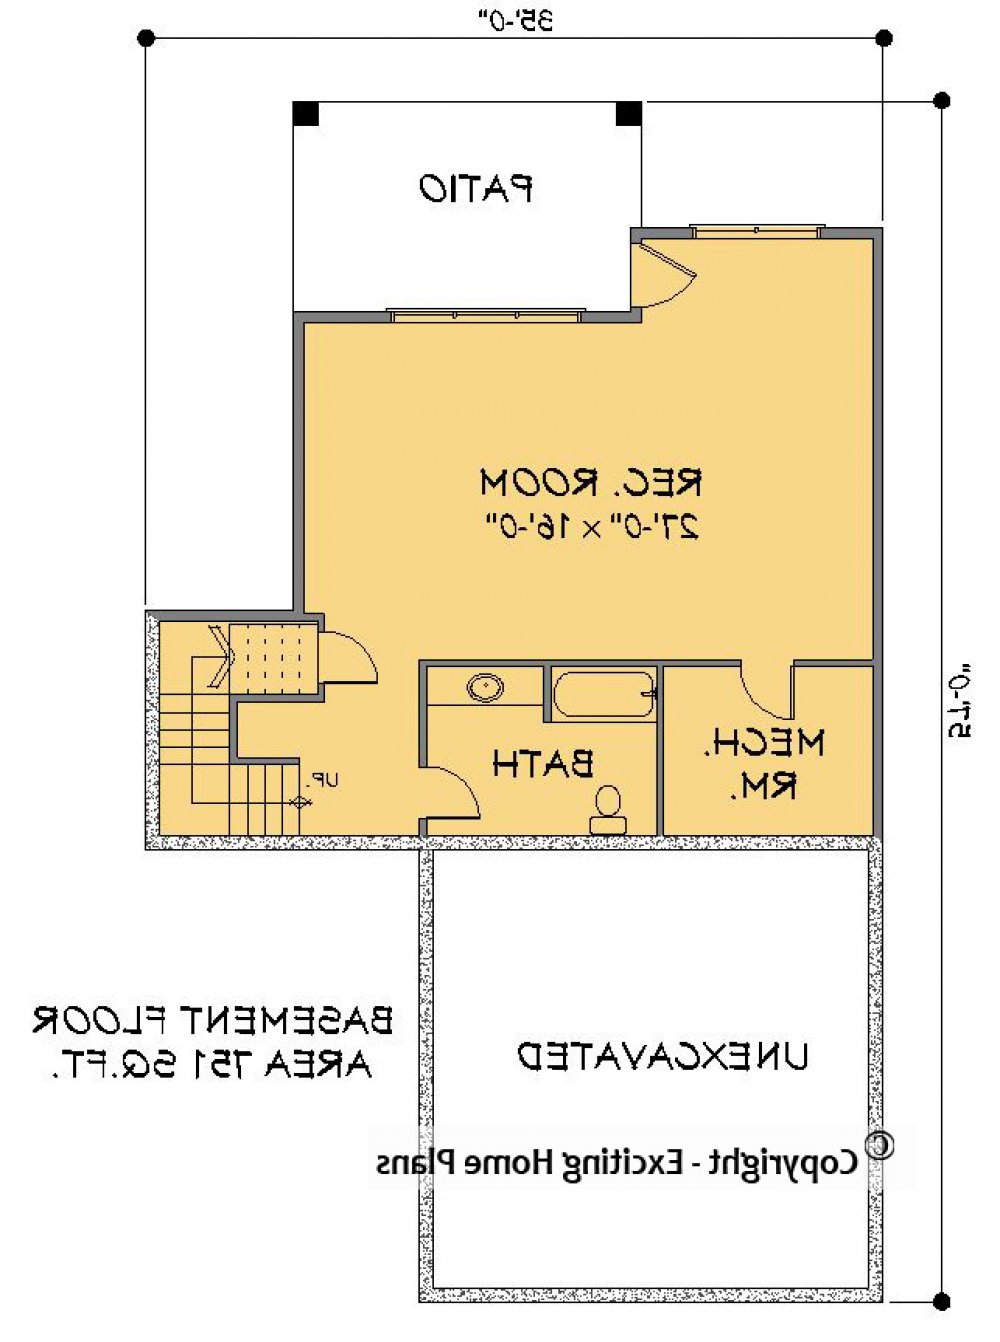 House Plan E1495-10 Lower Floor Plan REVERSE